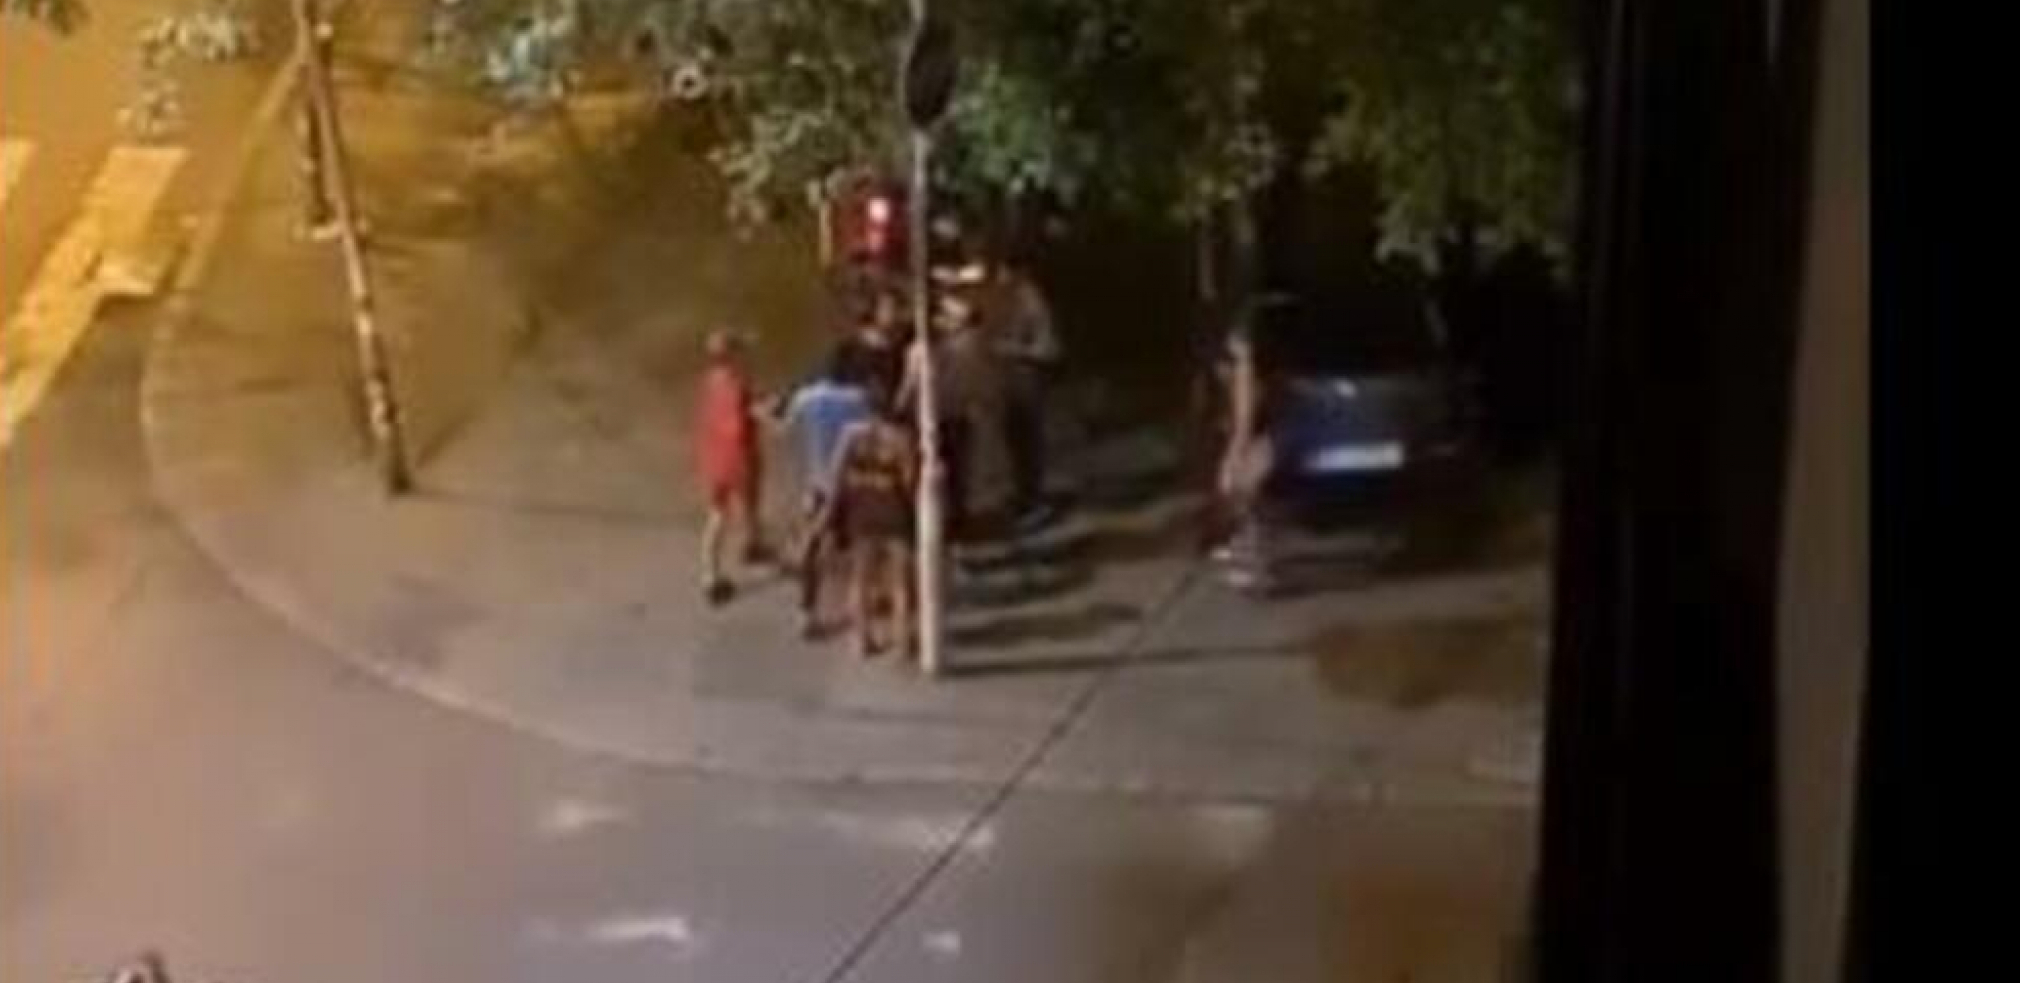 NJIH ŠESTORO NA JEDNOG Žestoka  tuča na Južnom Bulevaru, dobija udarac u lice i pada (VIDEO)